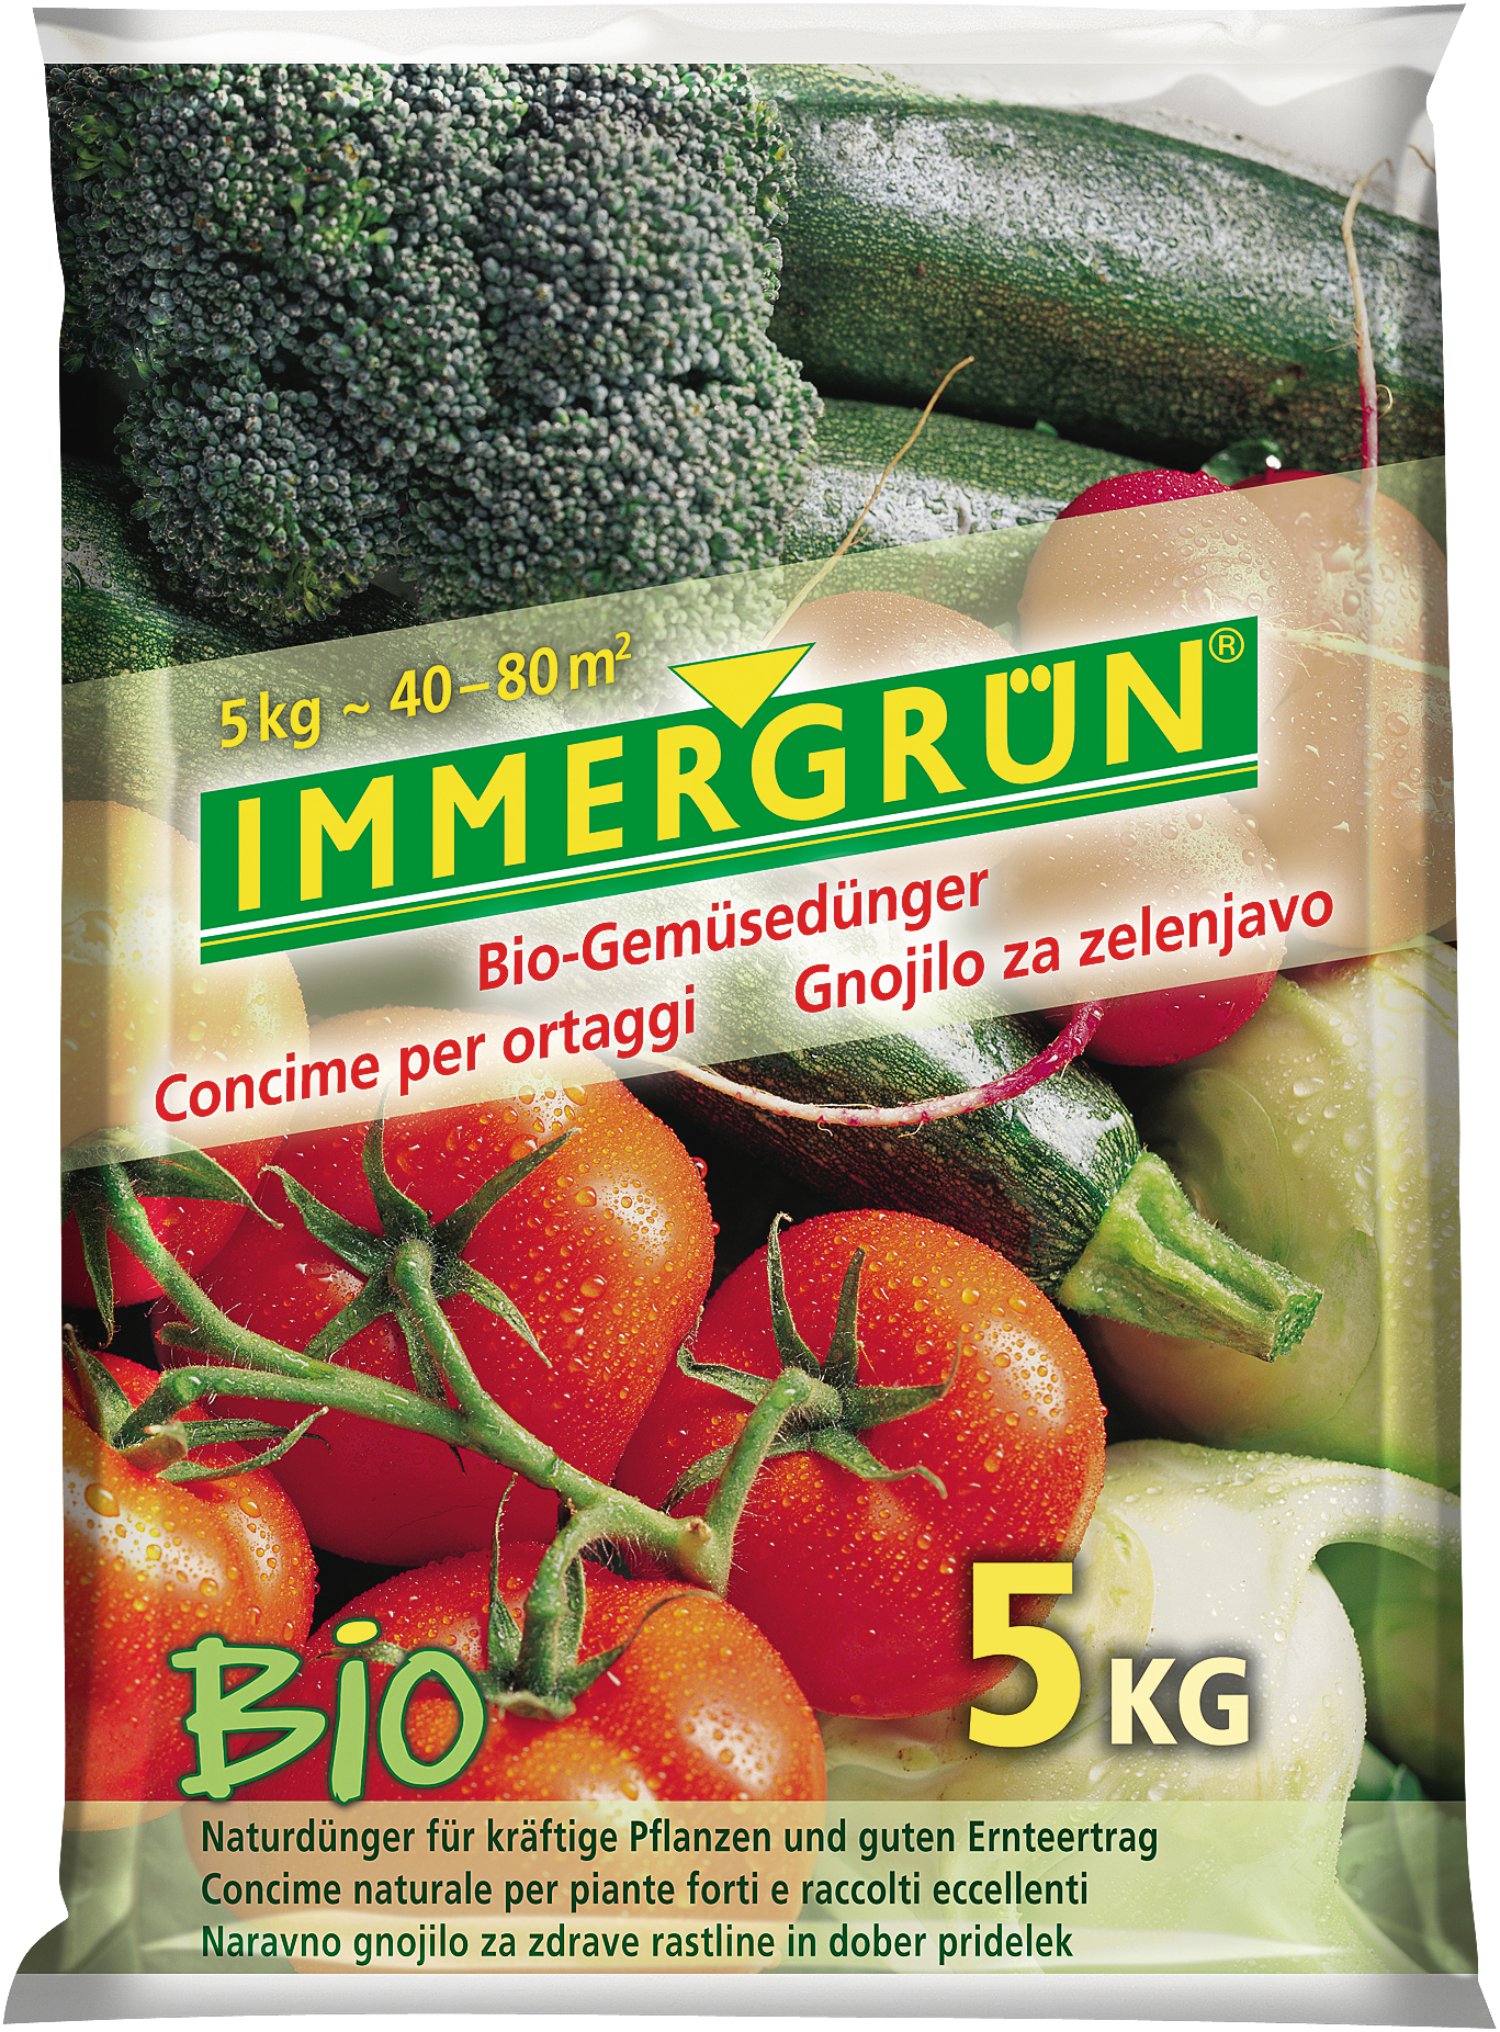 IMMERGRÜN Bio-Gemüsedünger 5 kg